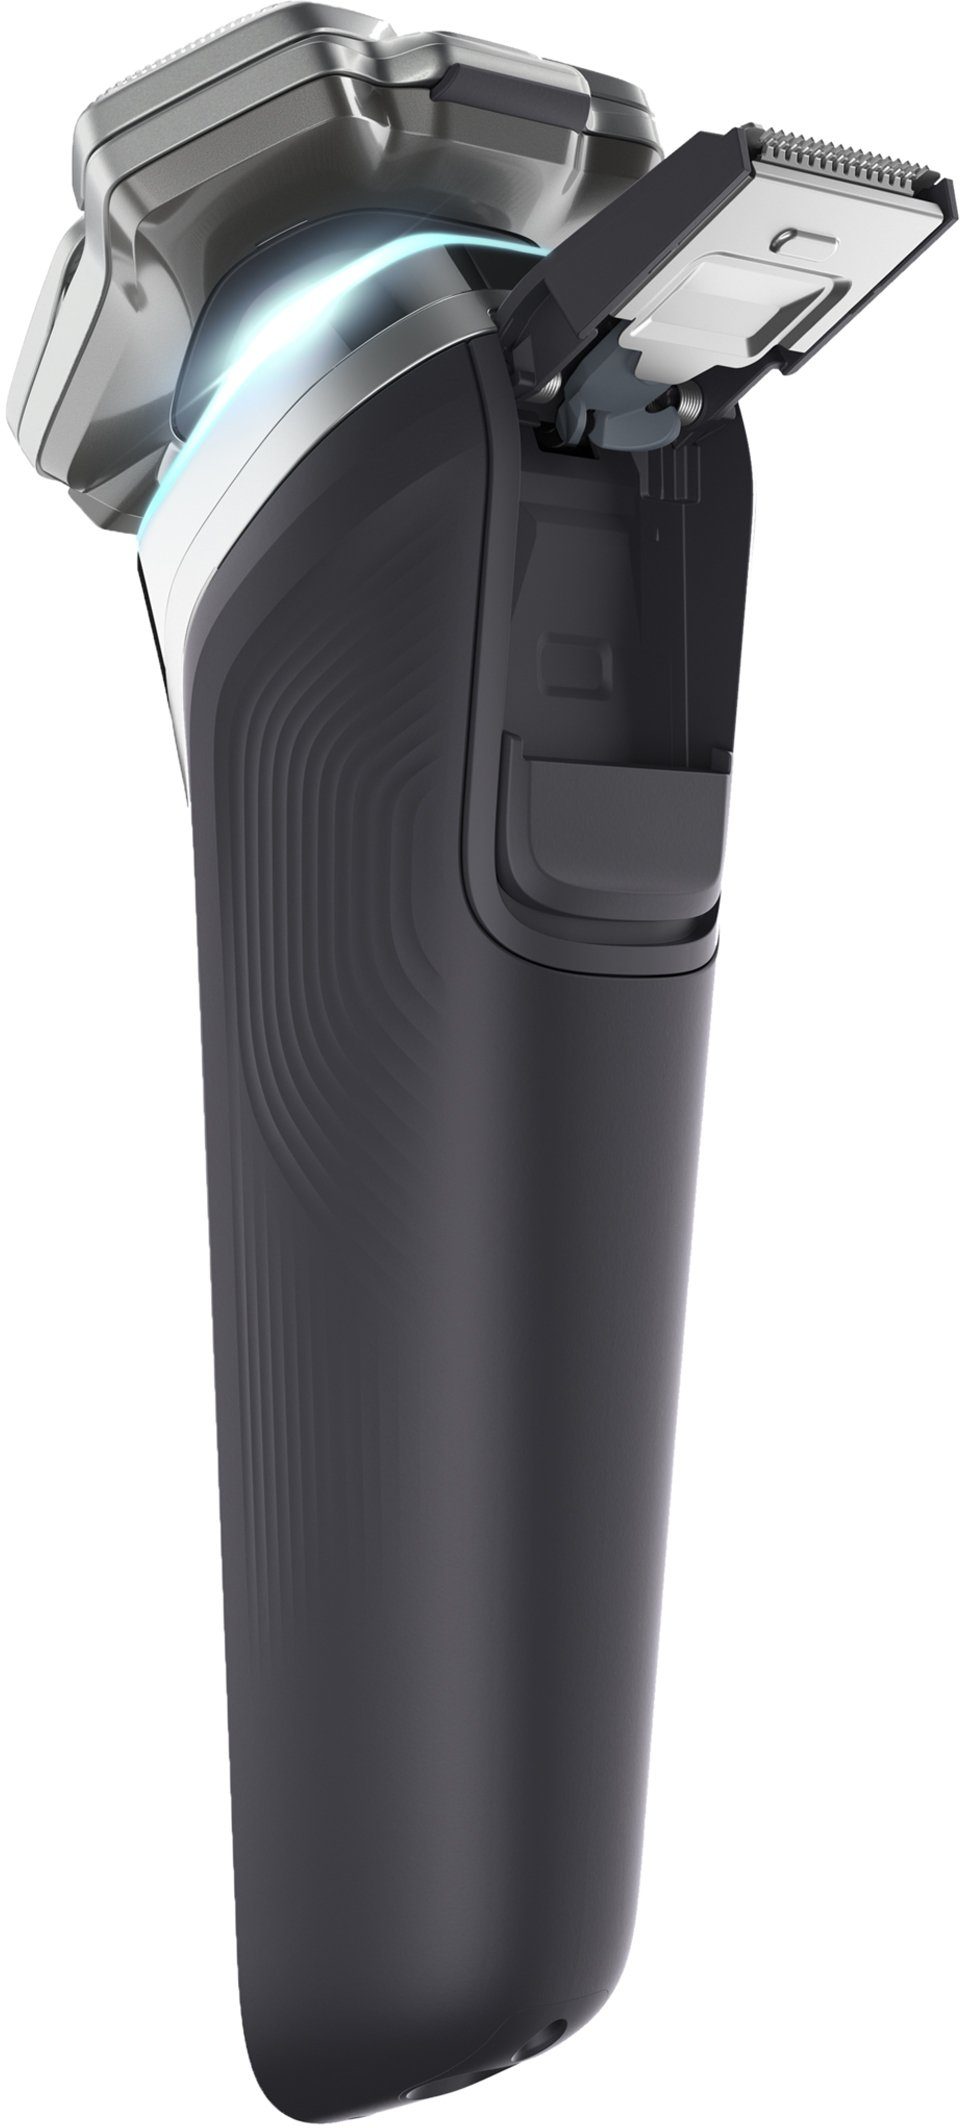 S9985/35, Etui inkl. Elektrorasierer IQ und 9000 mit Ladestation series Shaver Technologie, Skin Philips